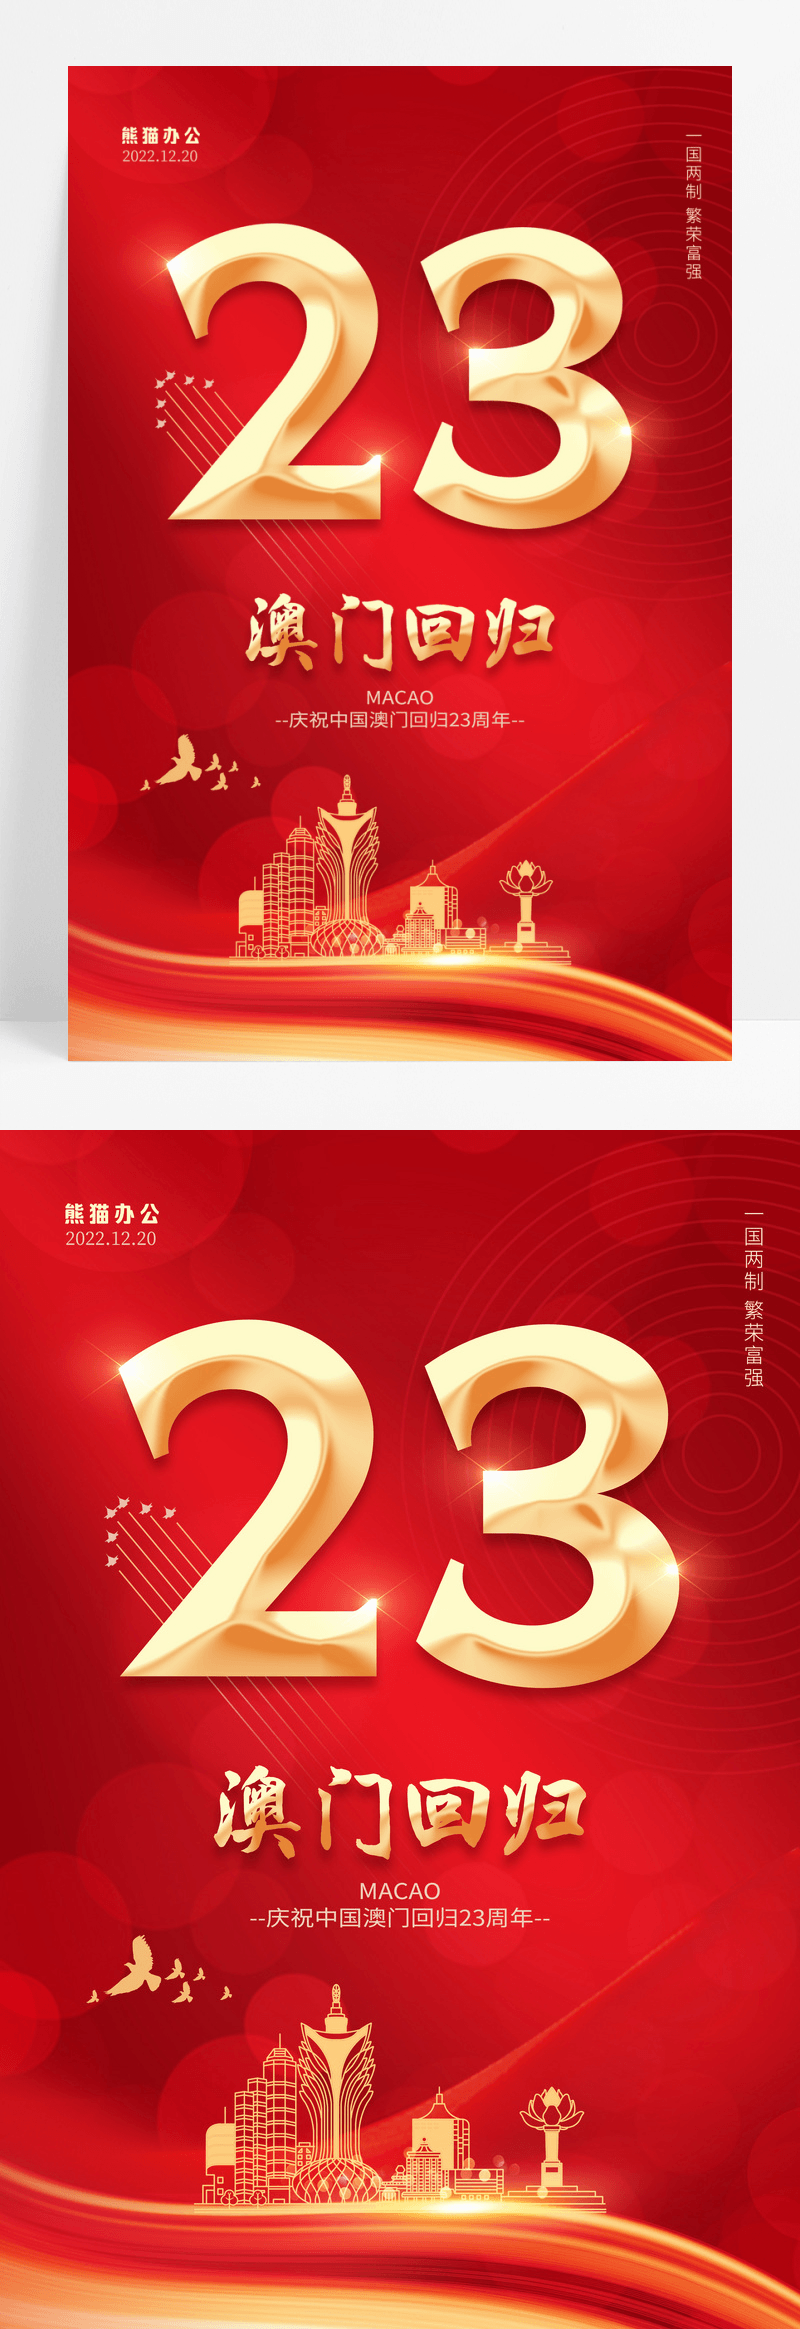 红色简约澳门回归23周年纪念日海报